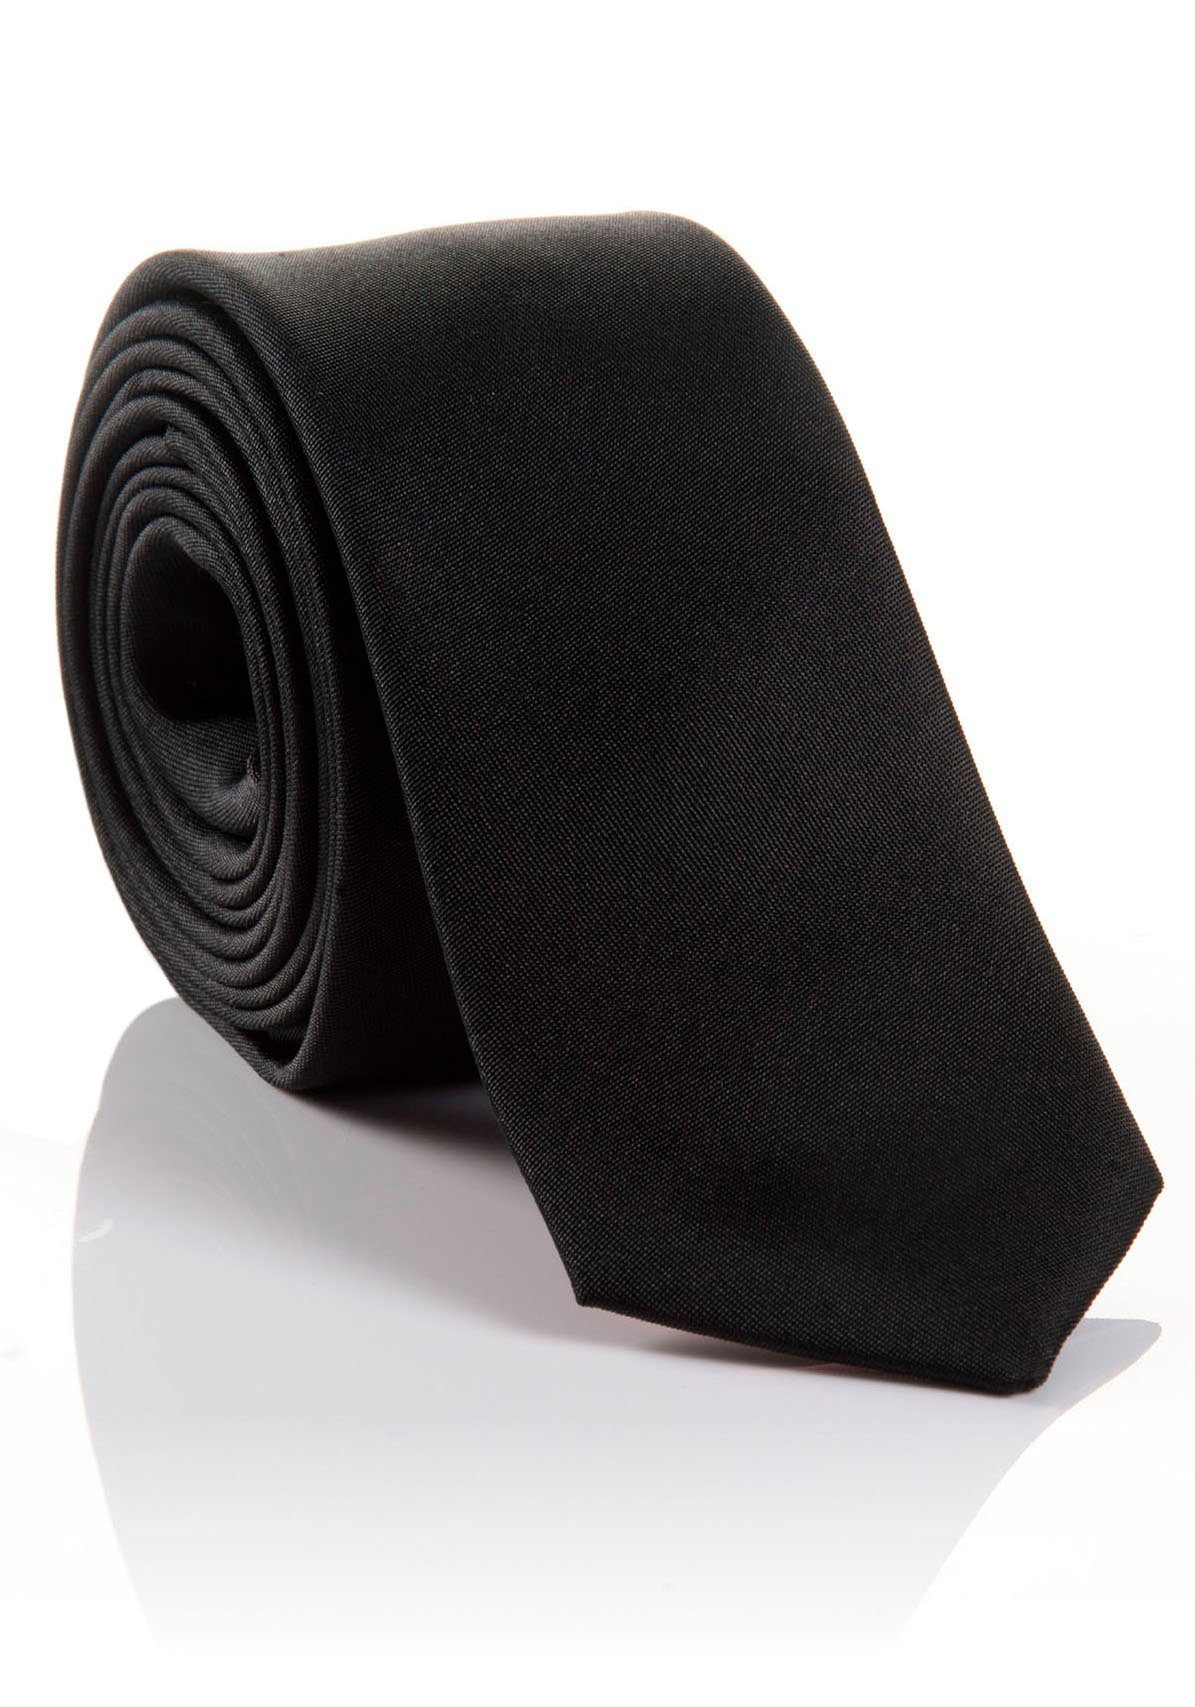 Beliebte Produkte MONTI Krawatte LORENZO mit verarbeitete black hohem Seidenkrawatte Tragekomfort Hochwertig